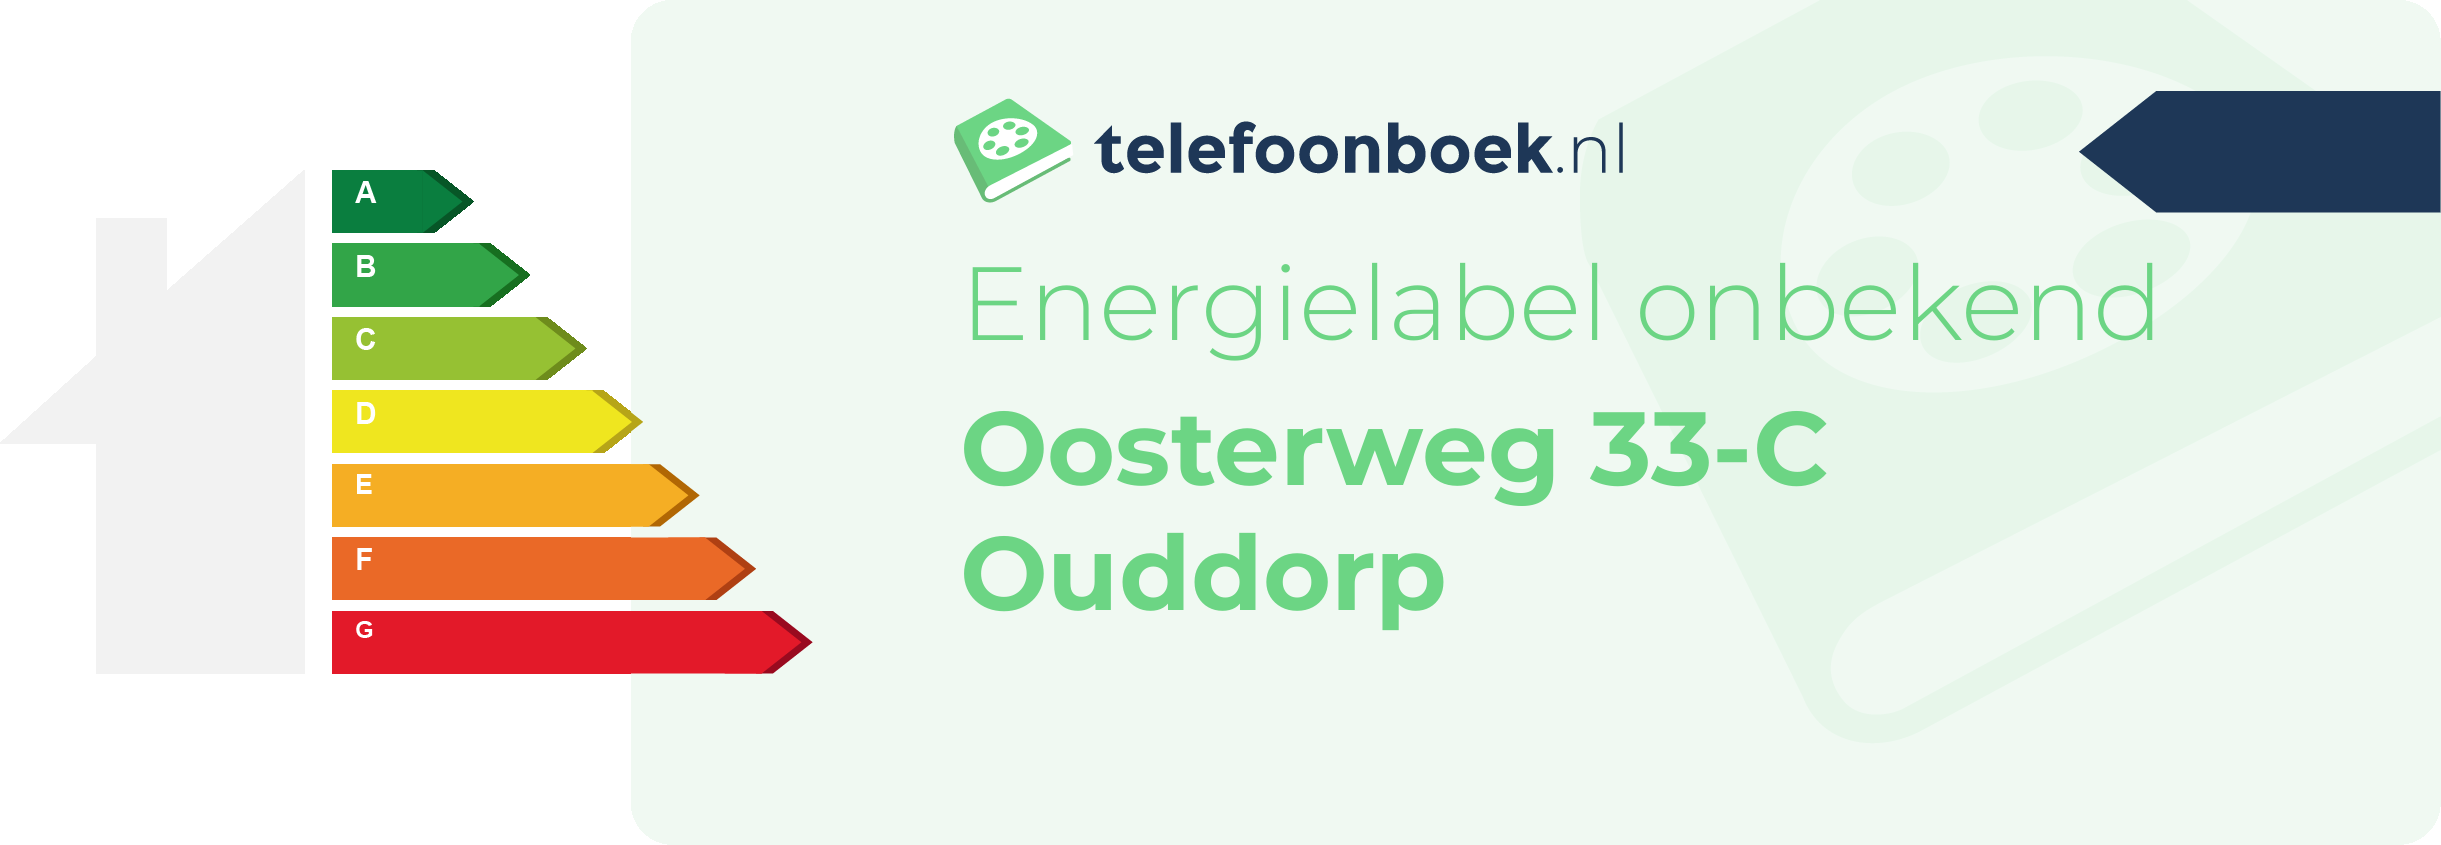 Energielabel Oosterweg 33-C Ouddorp